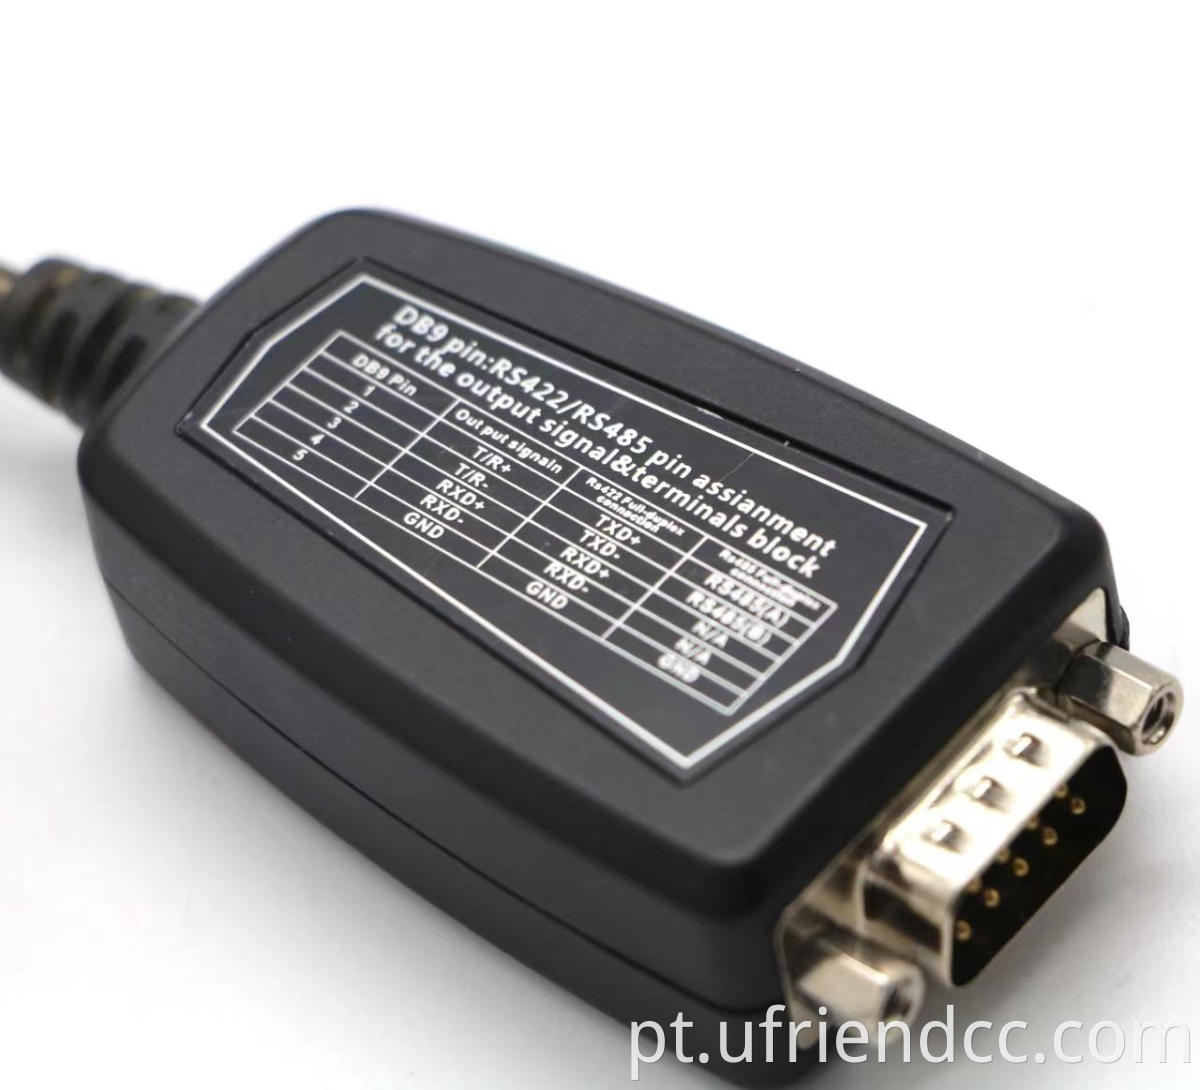 Bom chipset RS232 compatível com cabo de driver USB para registro de caixa, modem,